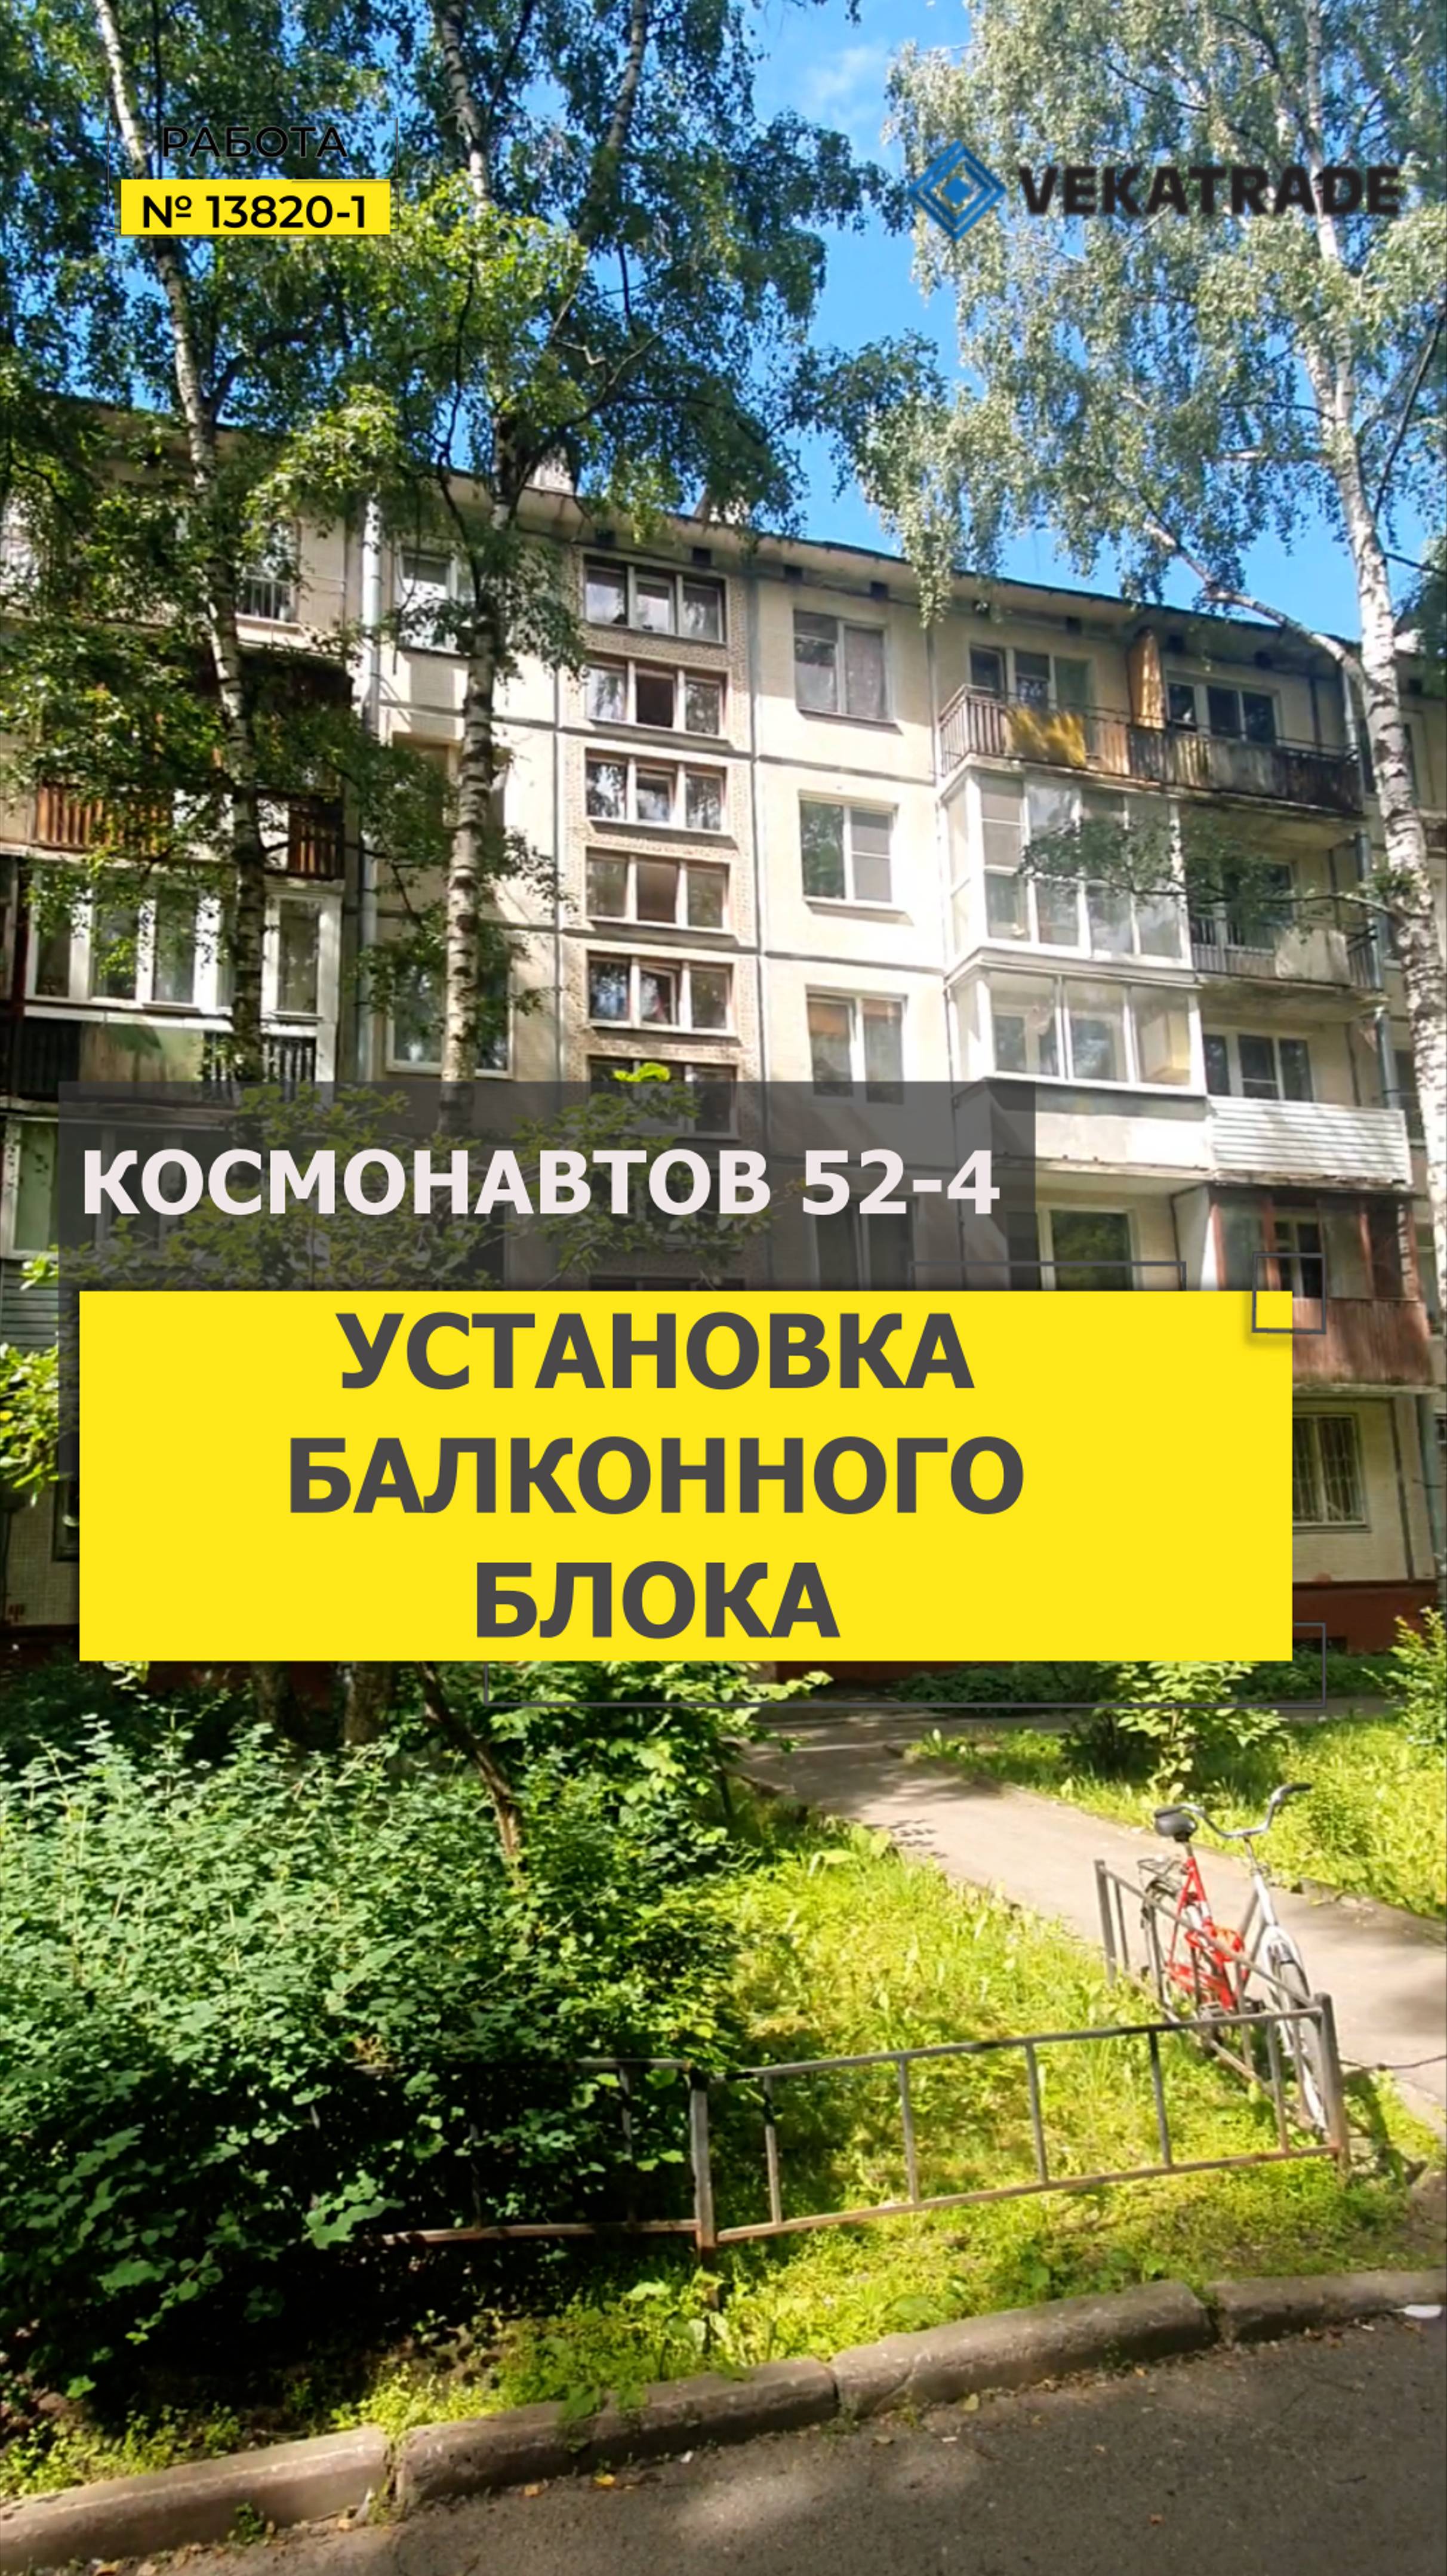 №13820 - 1 Остекление квартиры в доме серии 1ЛГ-507 Пр-кт Космонавтов 52-4